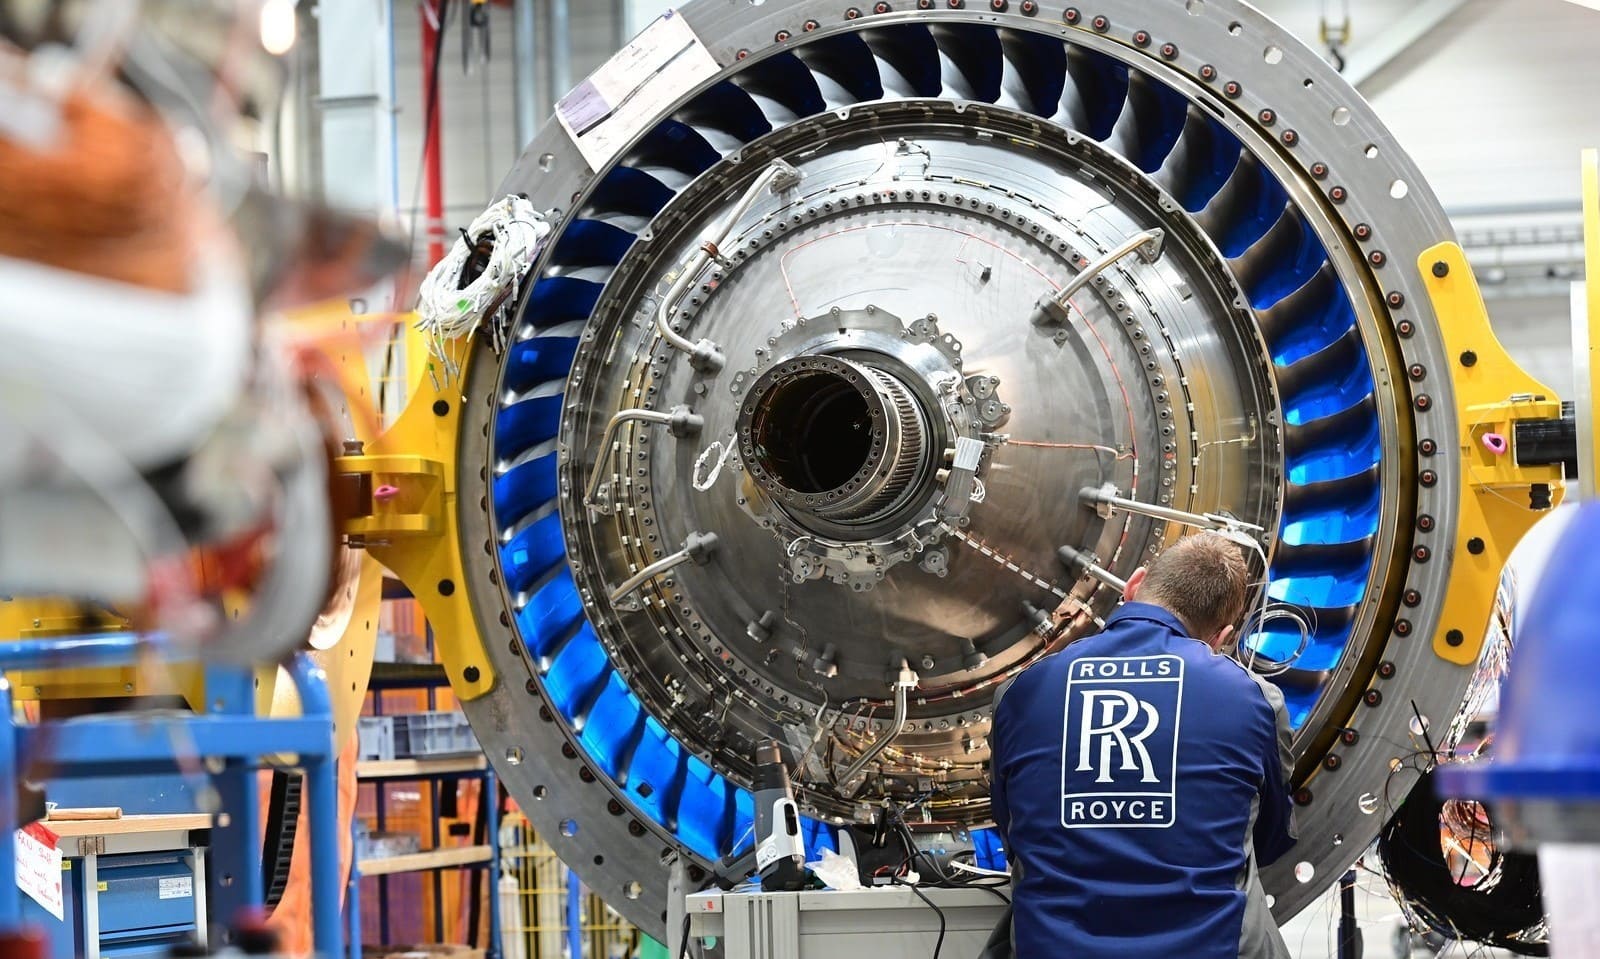 A Rolls-Royce concluiu a criação do enorme motor de aeronave UltraFan com capacidade de 87.000 hp.